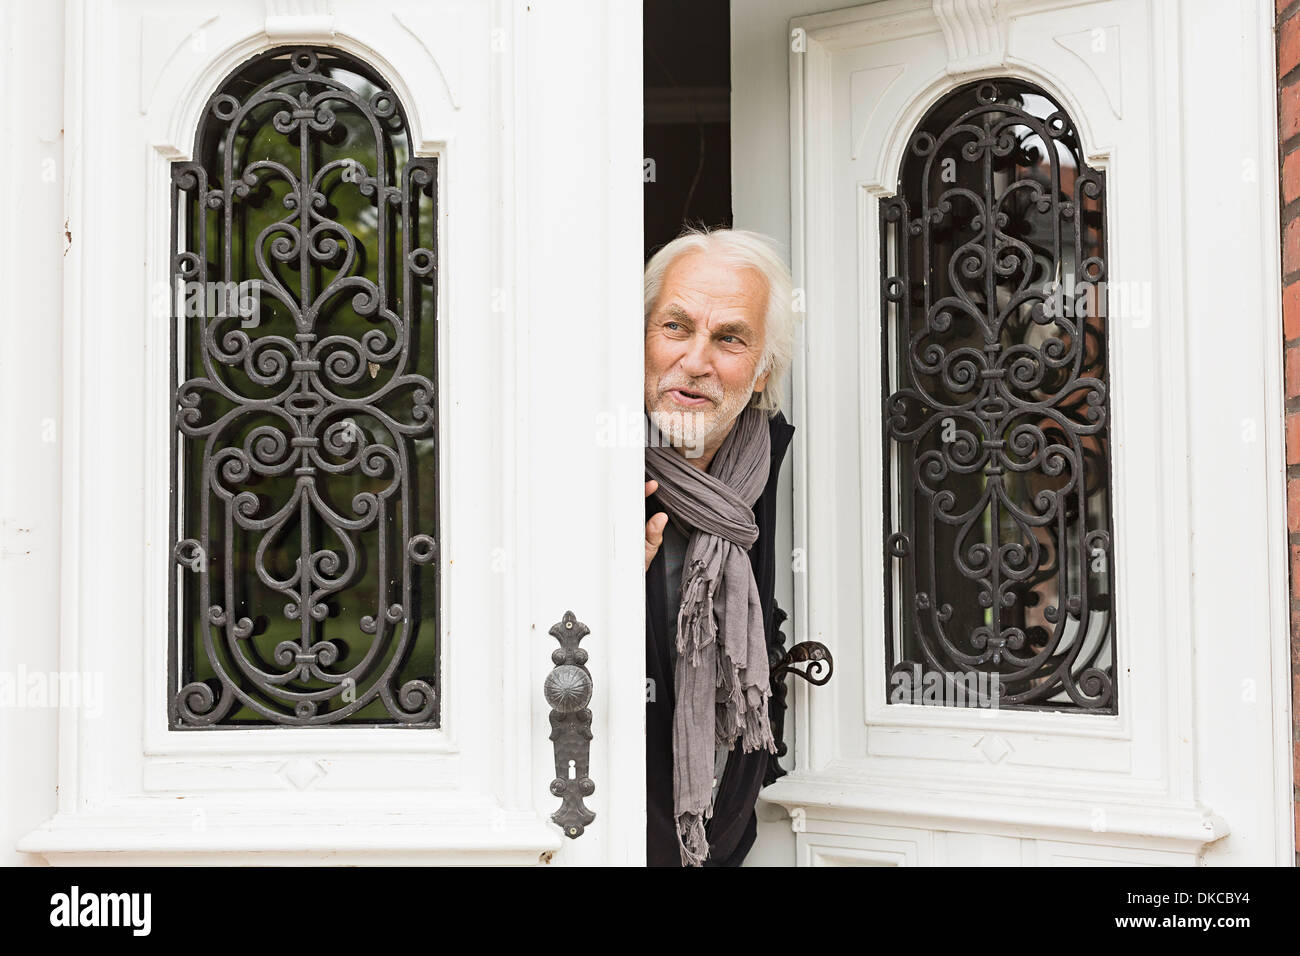 Senior man peeking through doorway Stock Photo